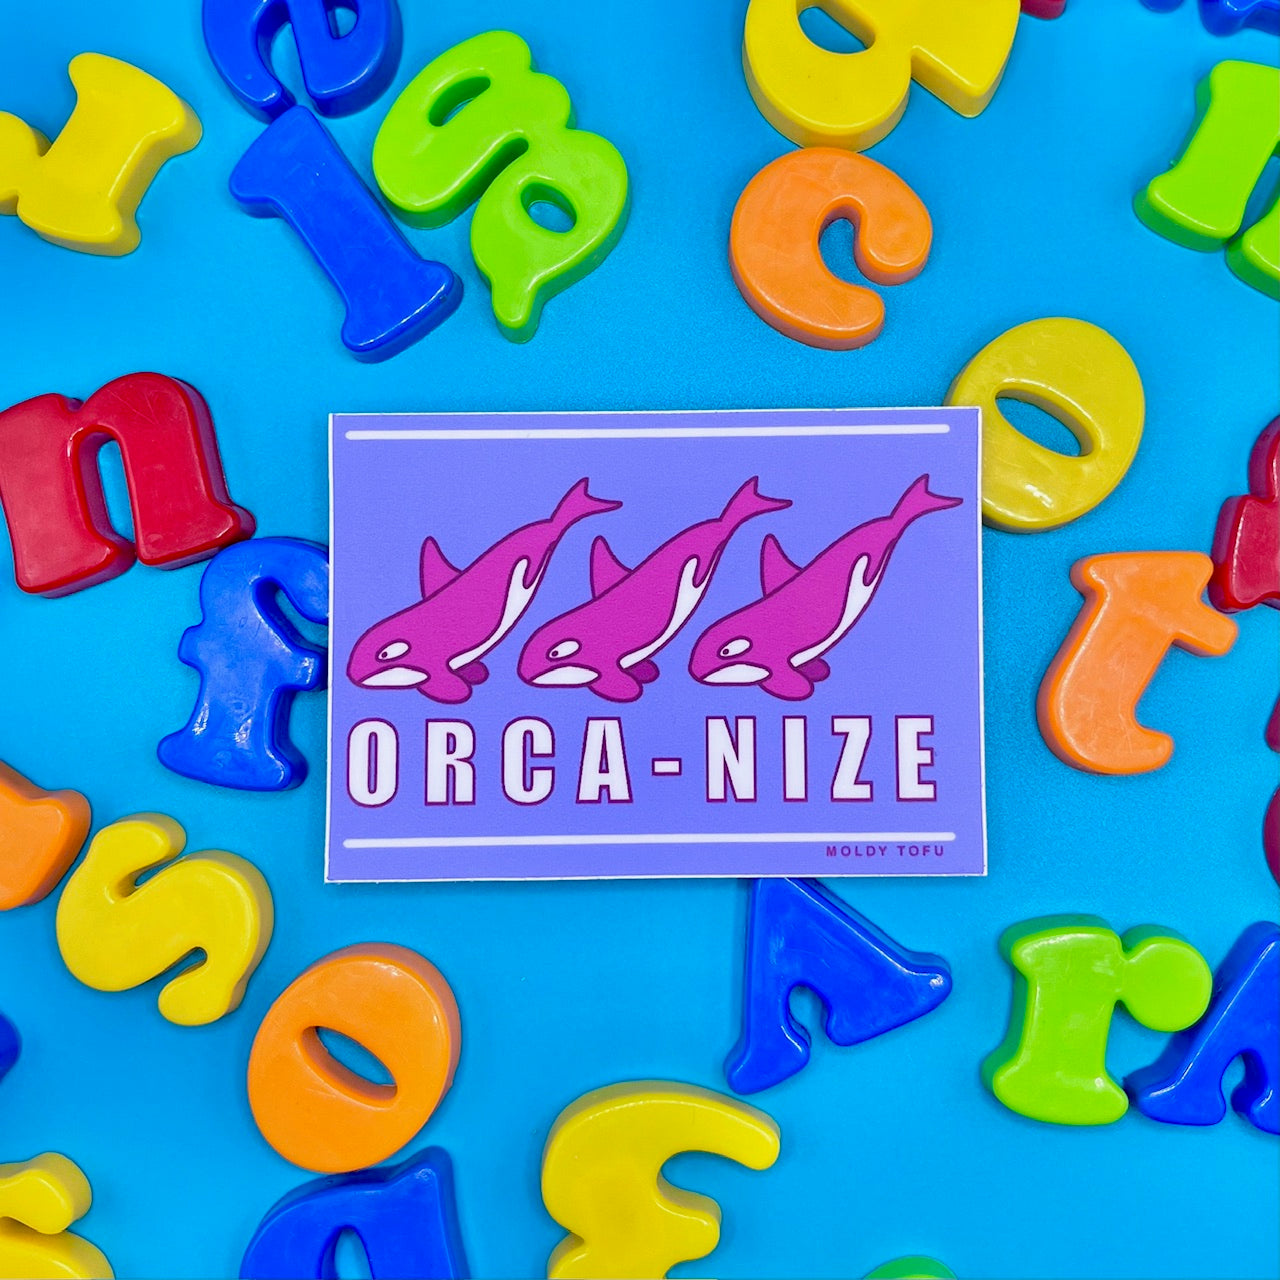 Orca-nize Vinyl Sticker